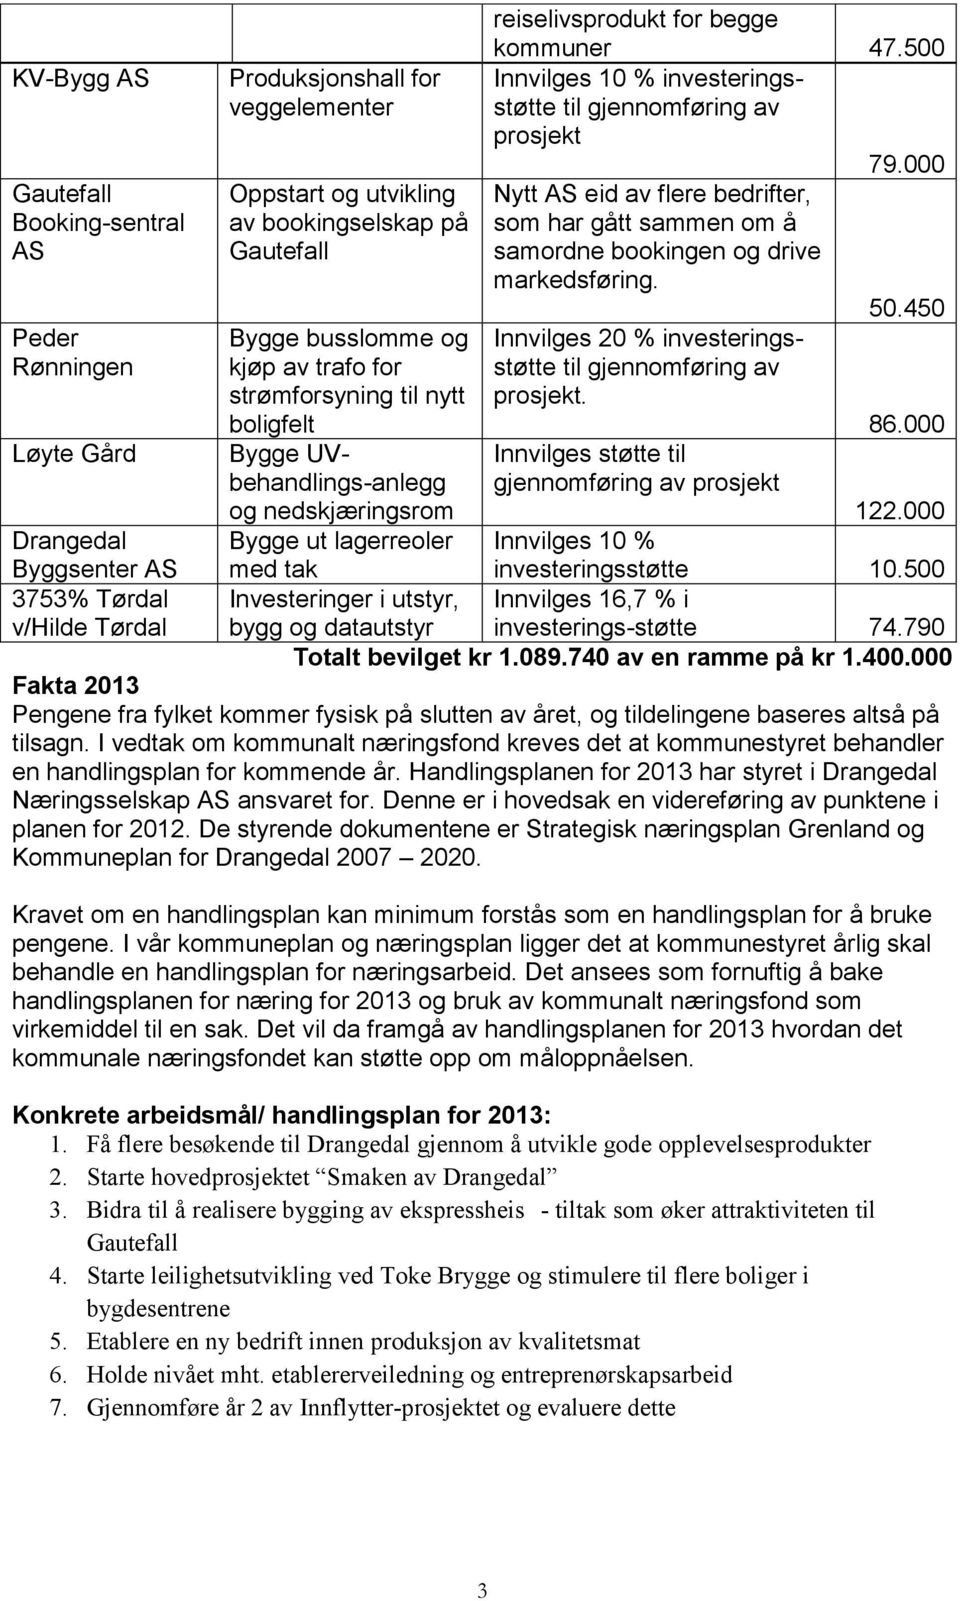 450 Peder Rønningen Bygge busslomme og kjøp av trafo for strømforsyning til nytt Innvilges 20 % investeringsstøtte til gjennomføring av prosjekt. boligfelt 86.